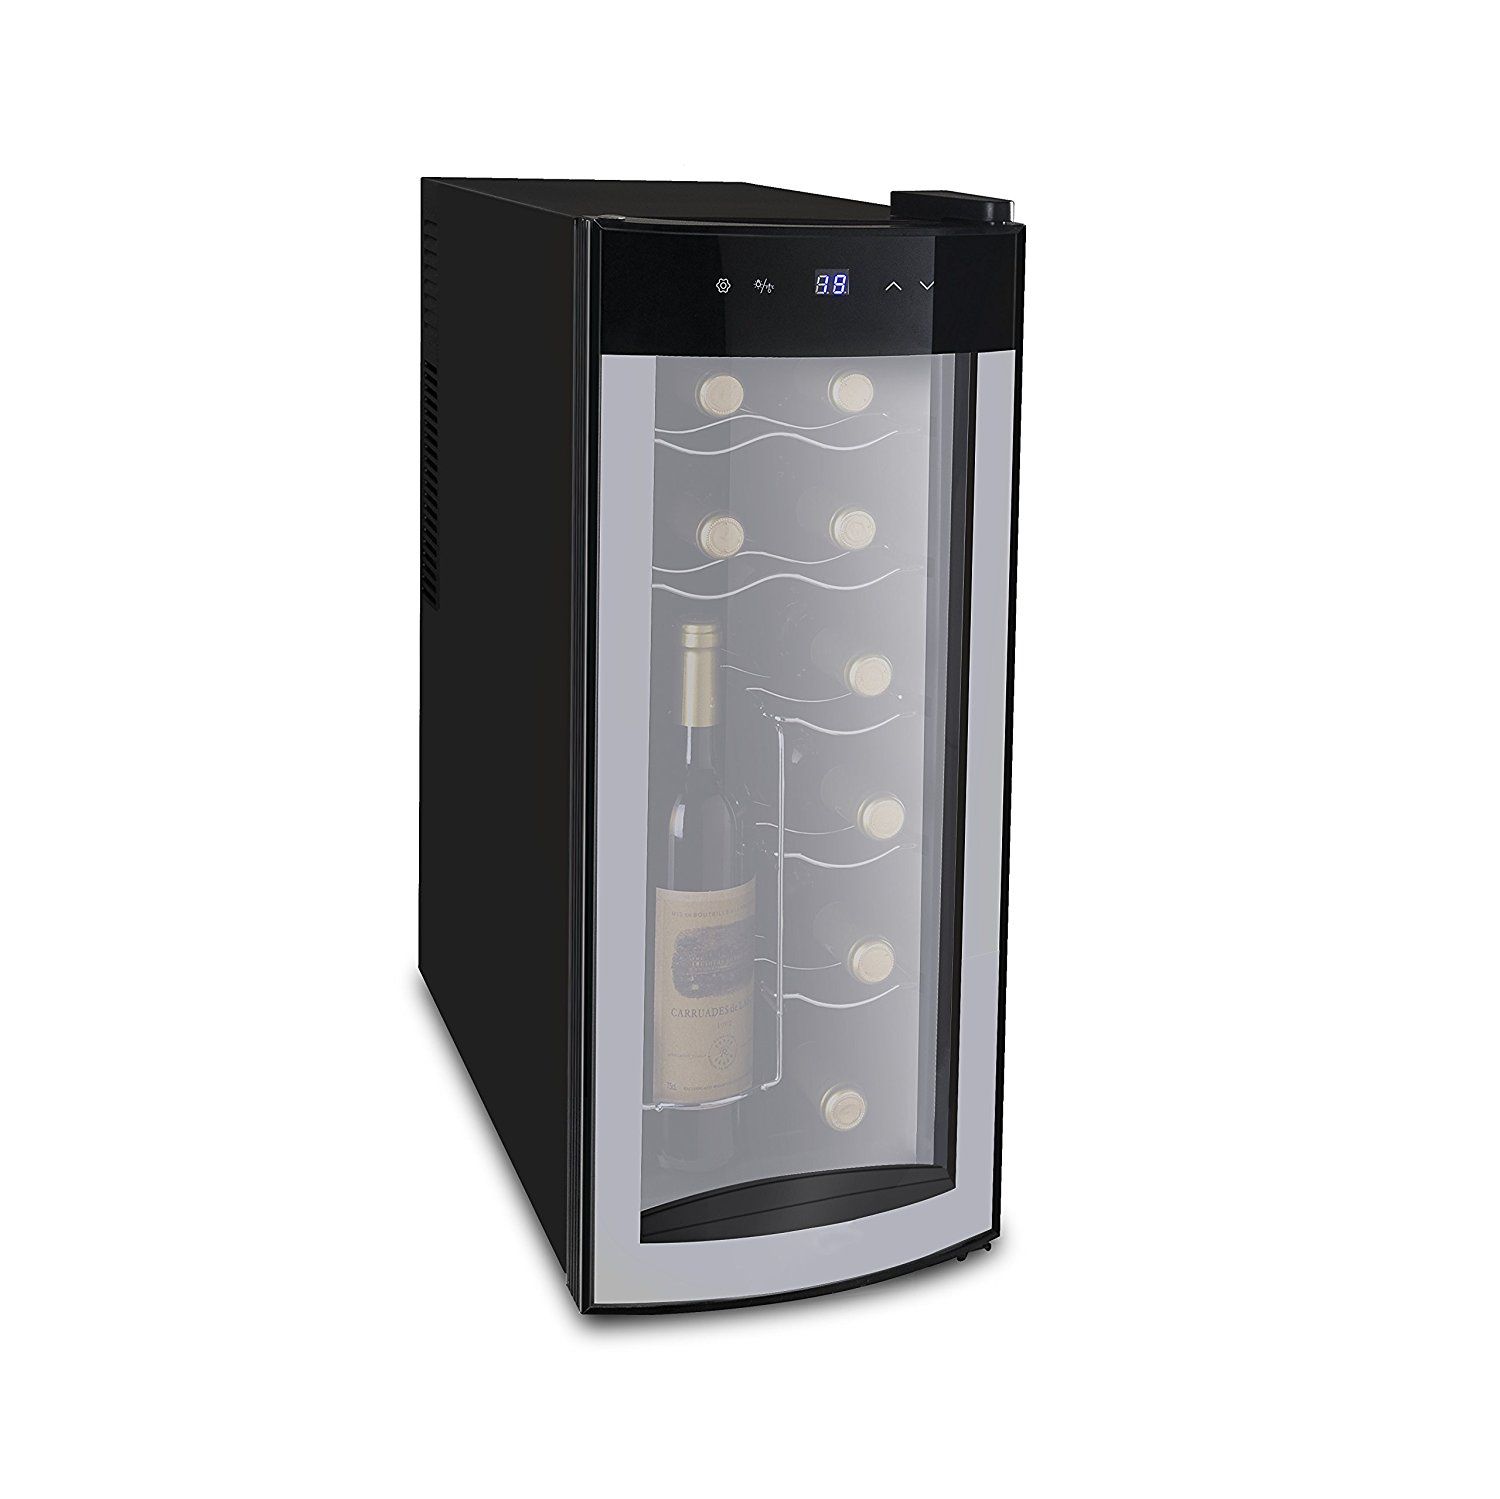 Fireplace Glass Doors Amazon Luxury Amazon Igloo 12 Bottle Wine Cooler with Curved Glass